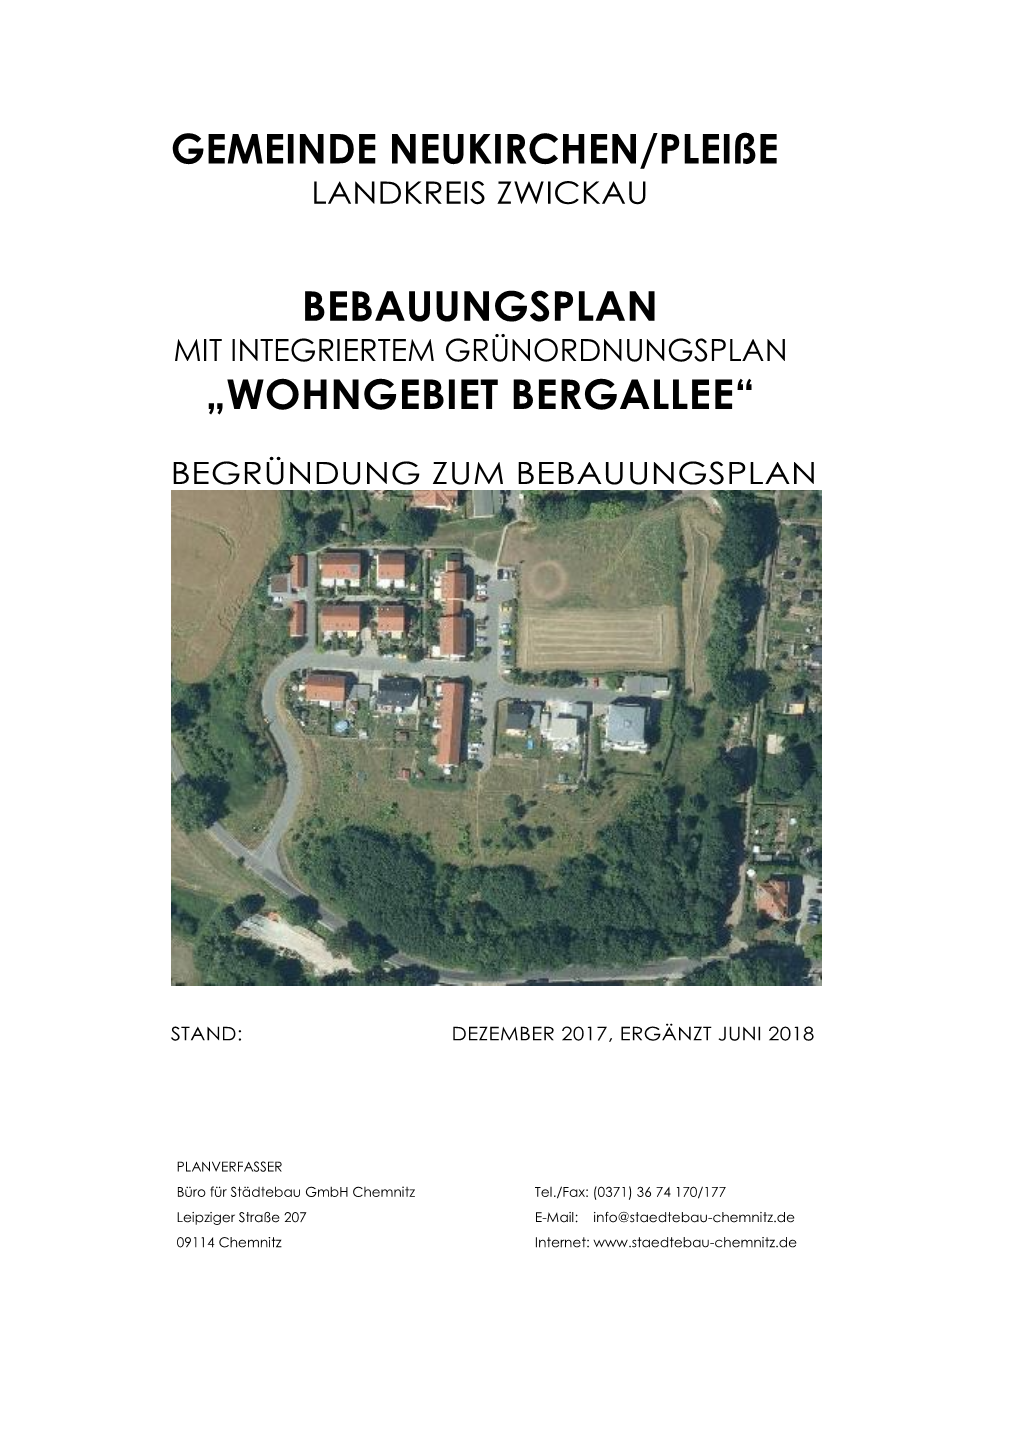 Gemeinde Neukirchen/Pleiße Bebauungsplan